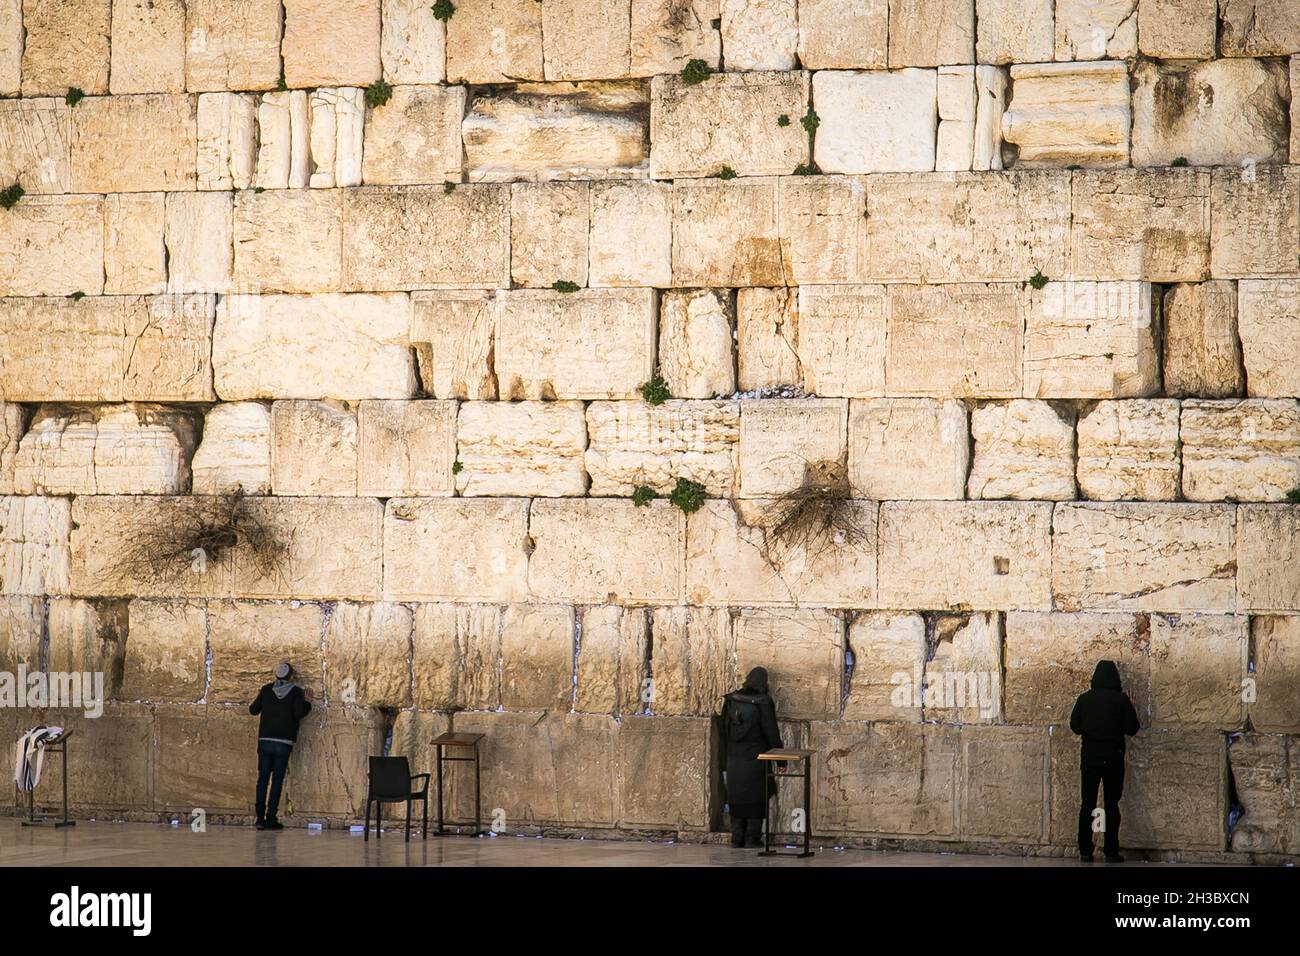 Les gens priant dans le mur occidental dans la vieille ville de Jérusalem, le mur occidental d'Israël.Prières au mur des lamentations à Jérusalem. Banque D'Images